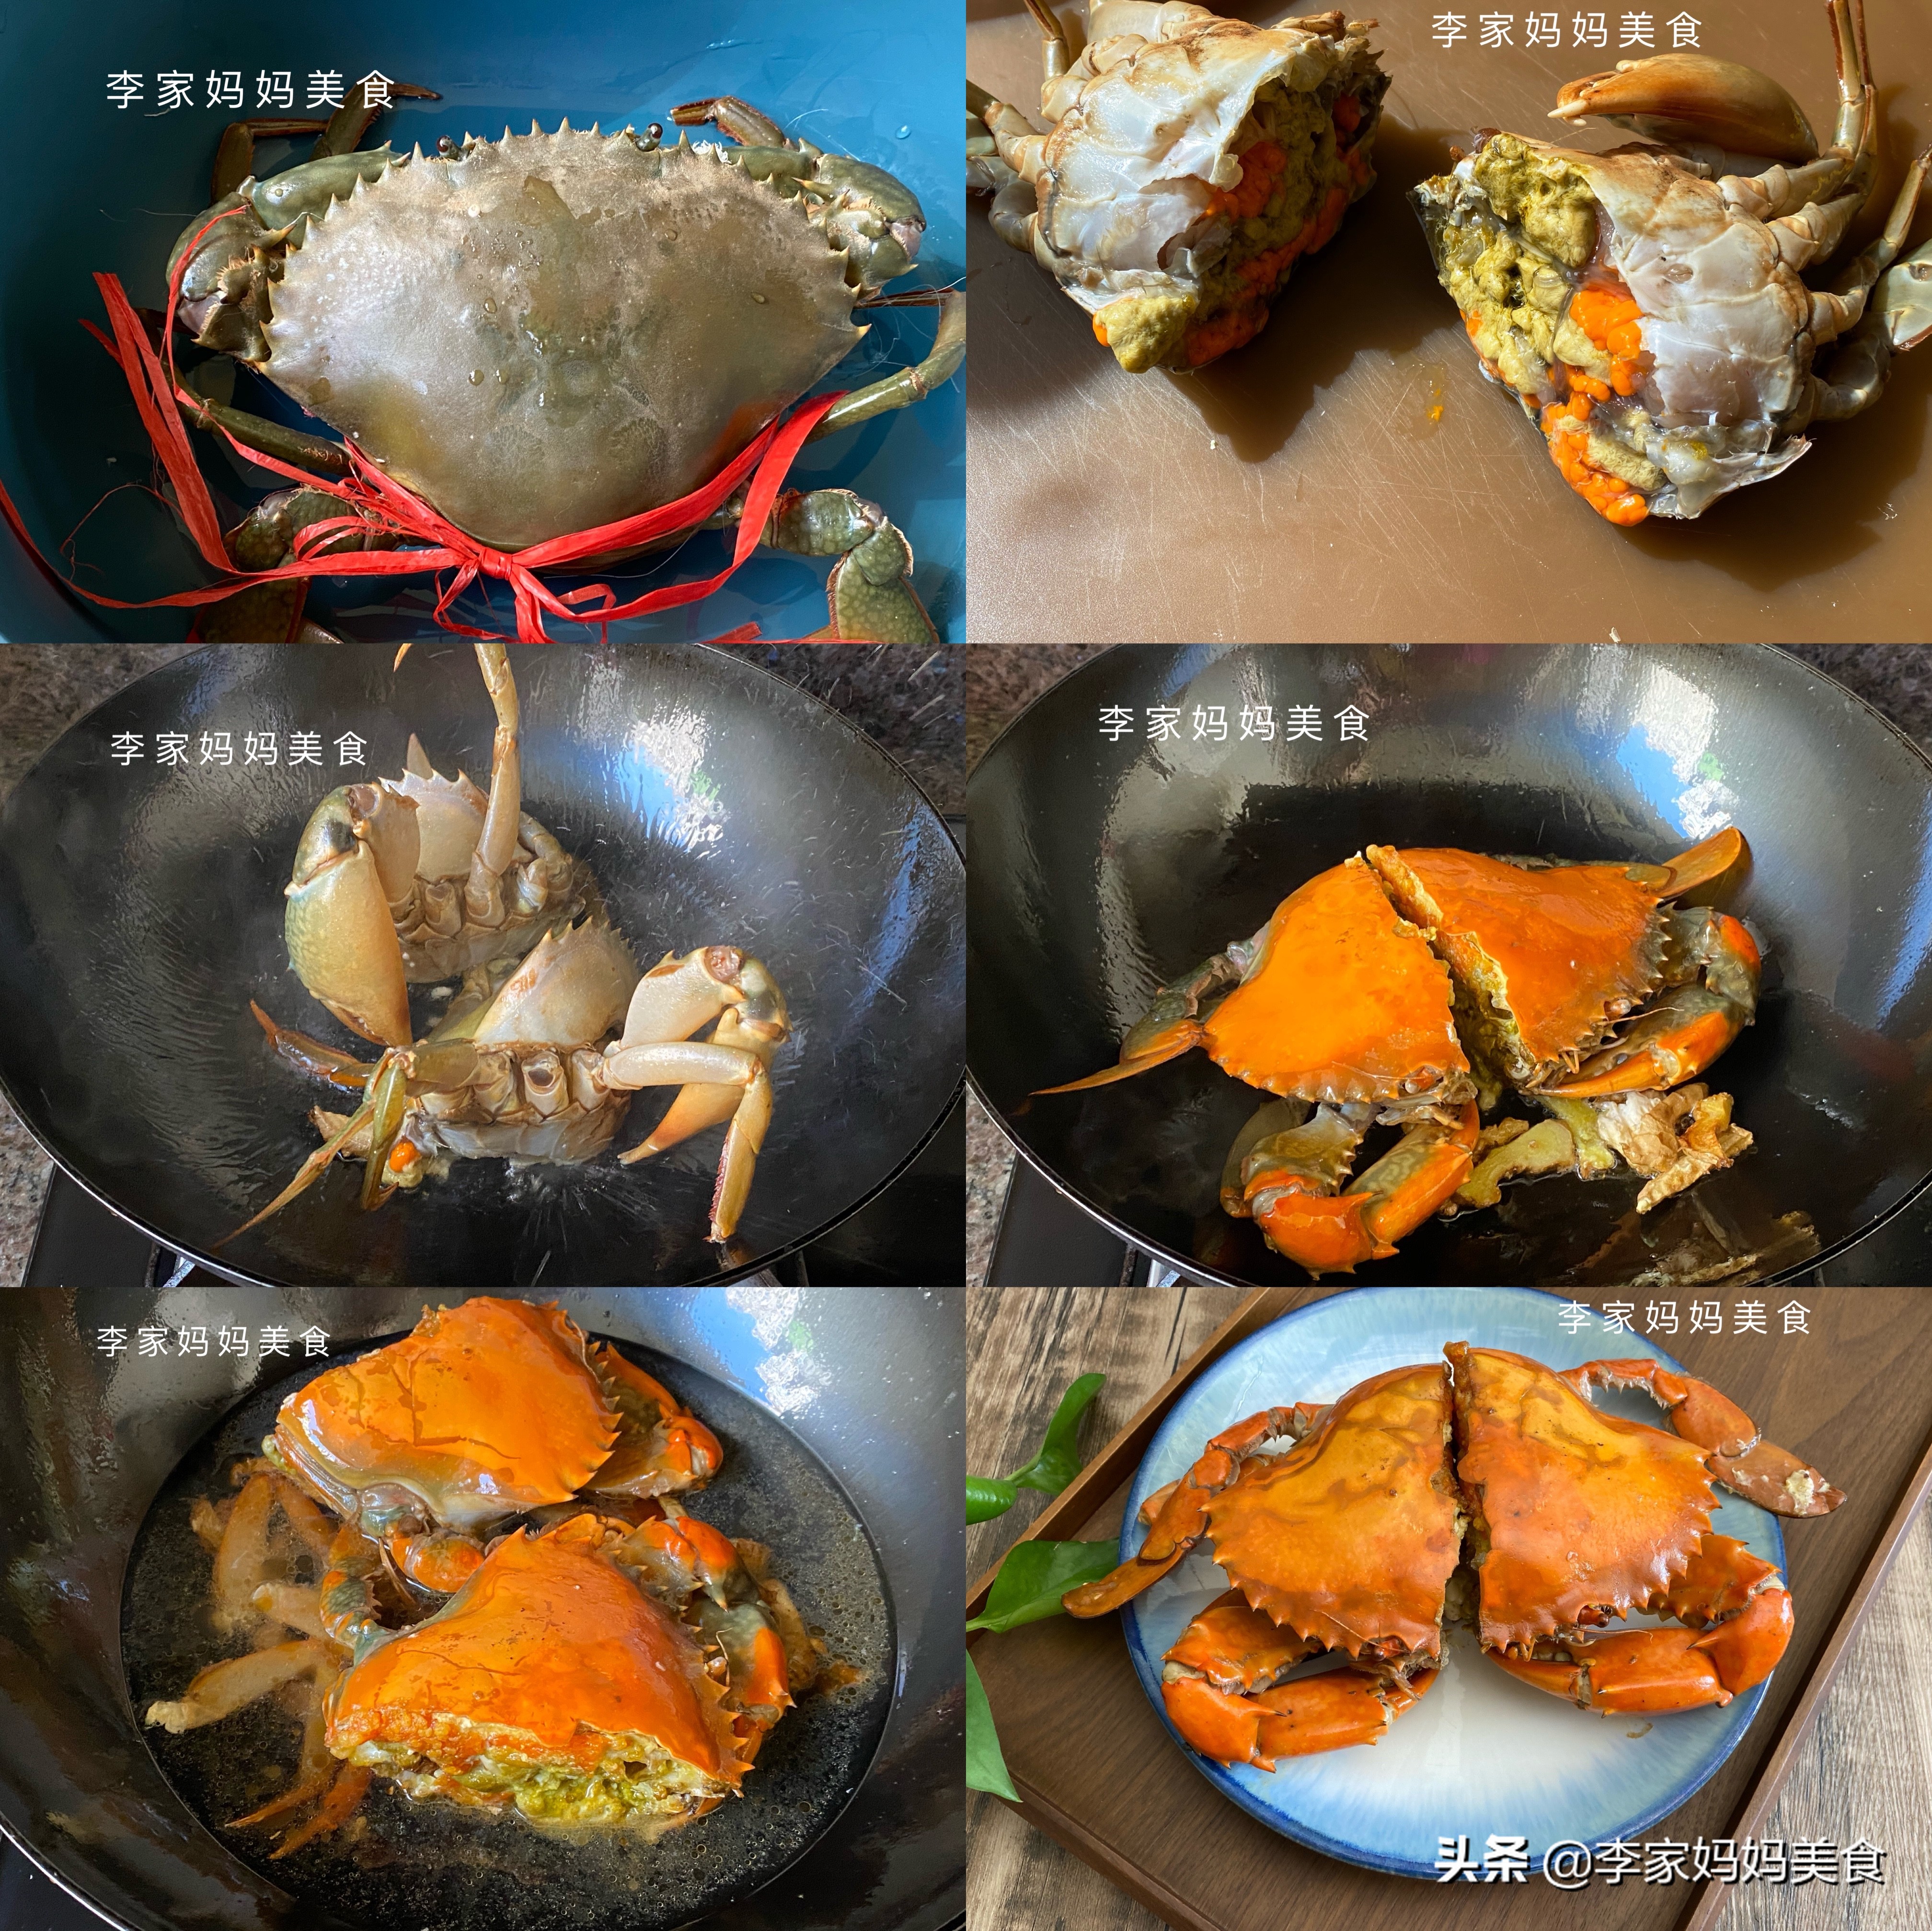 食材:螃蟹(红膏蟹),姜,料酒,盐做法:1,挑螃蟹时,要选活蹦乱跳,新鲜的